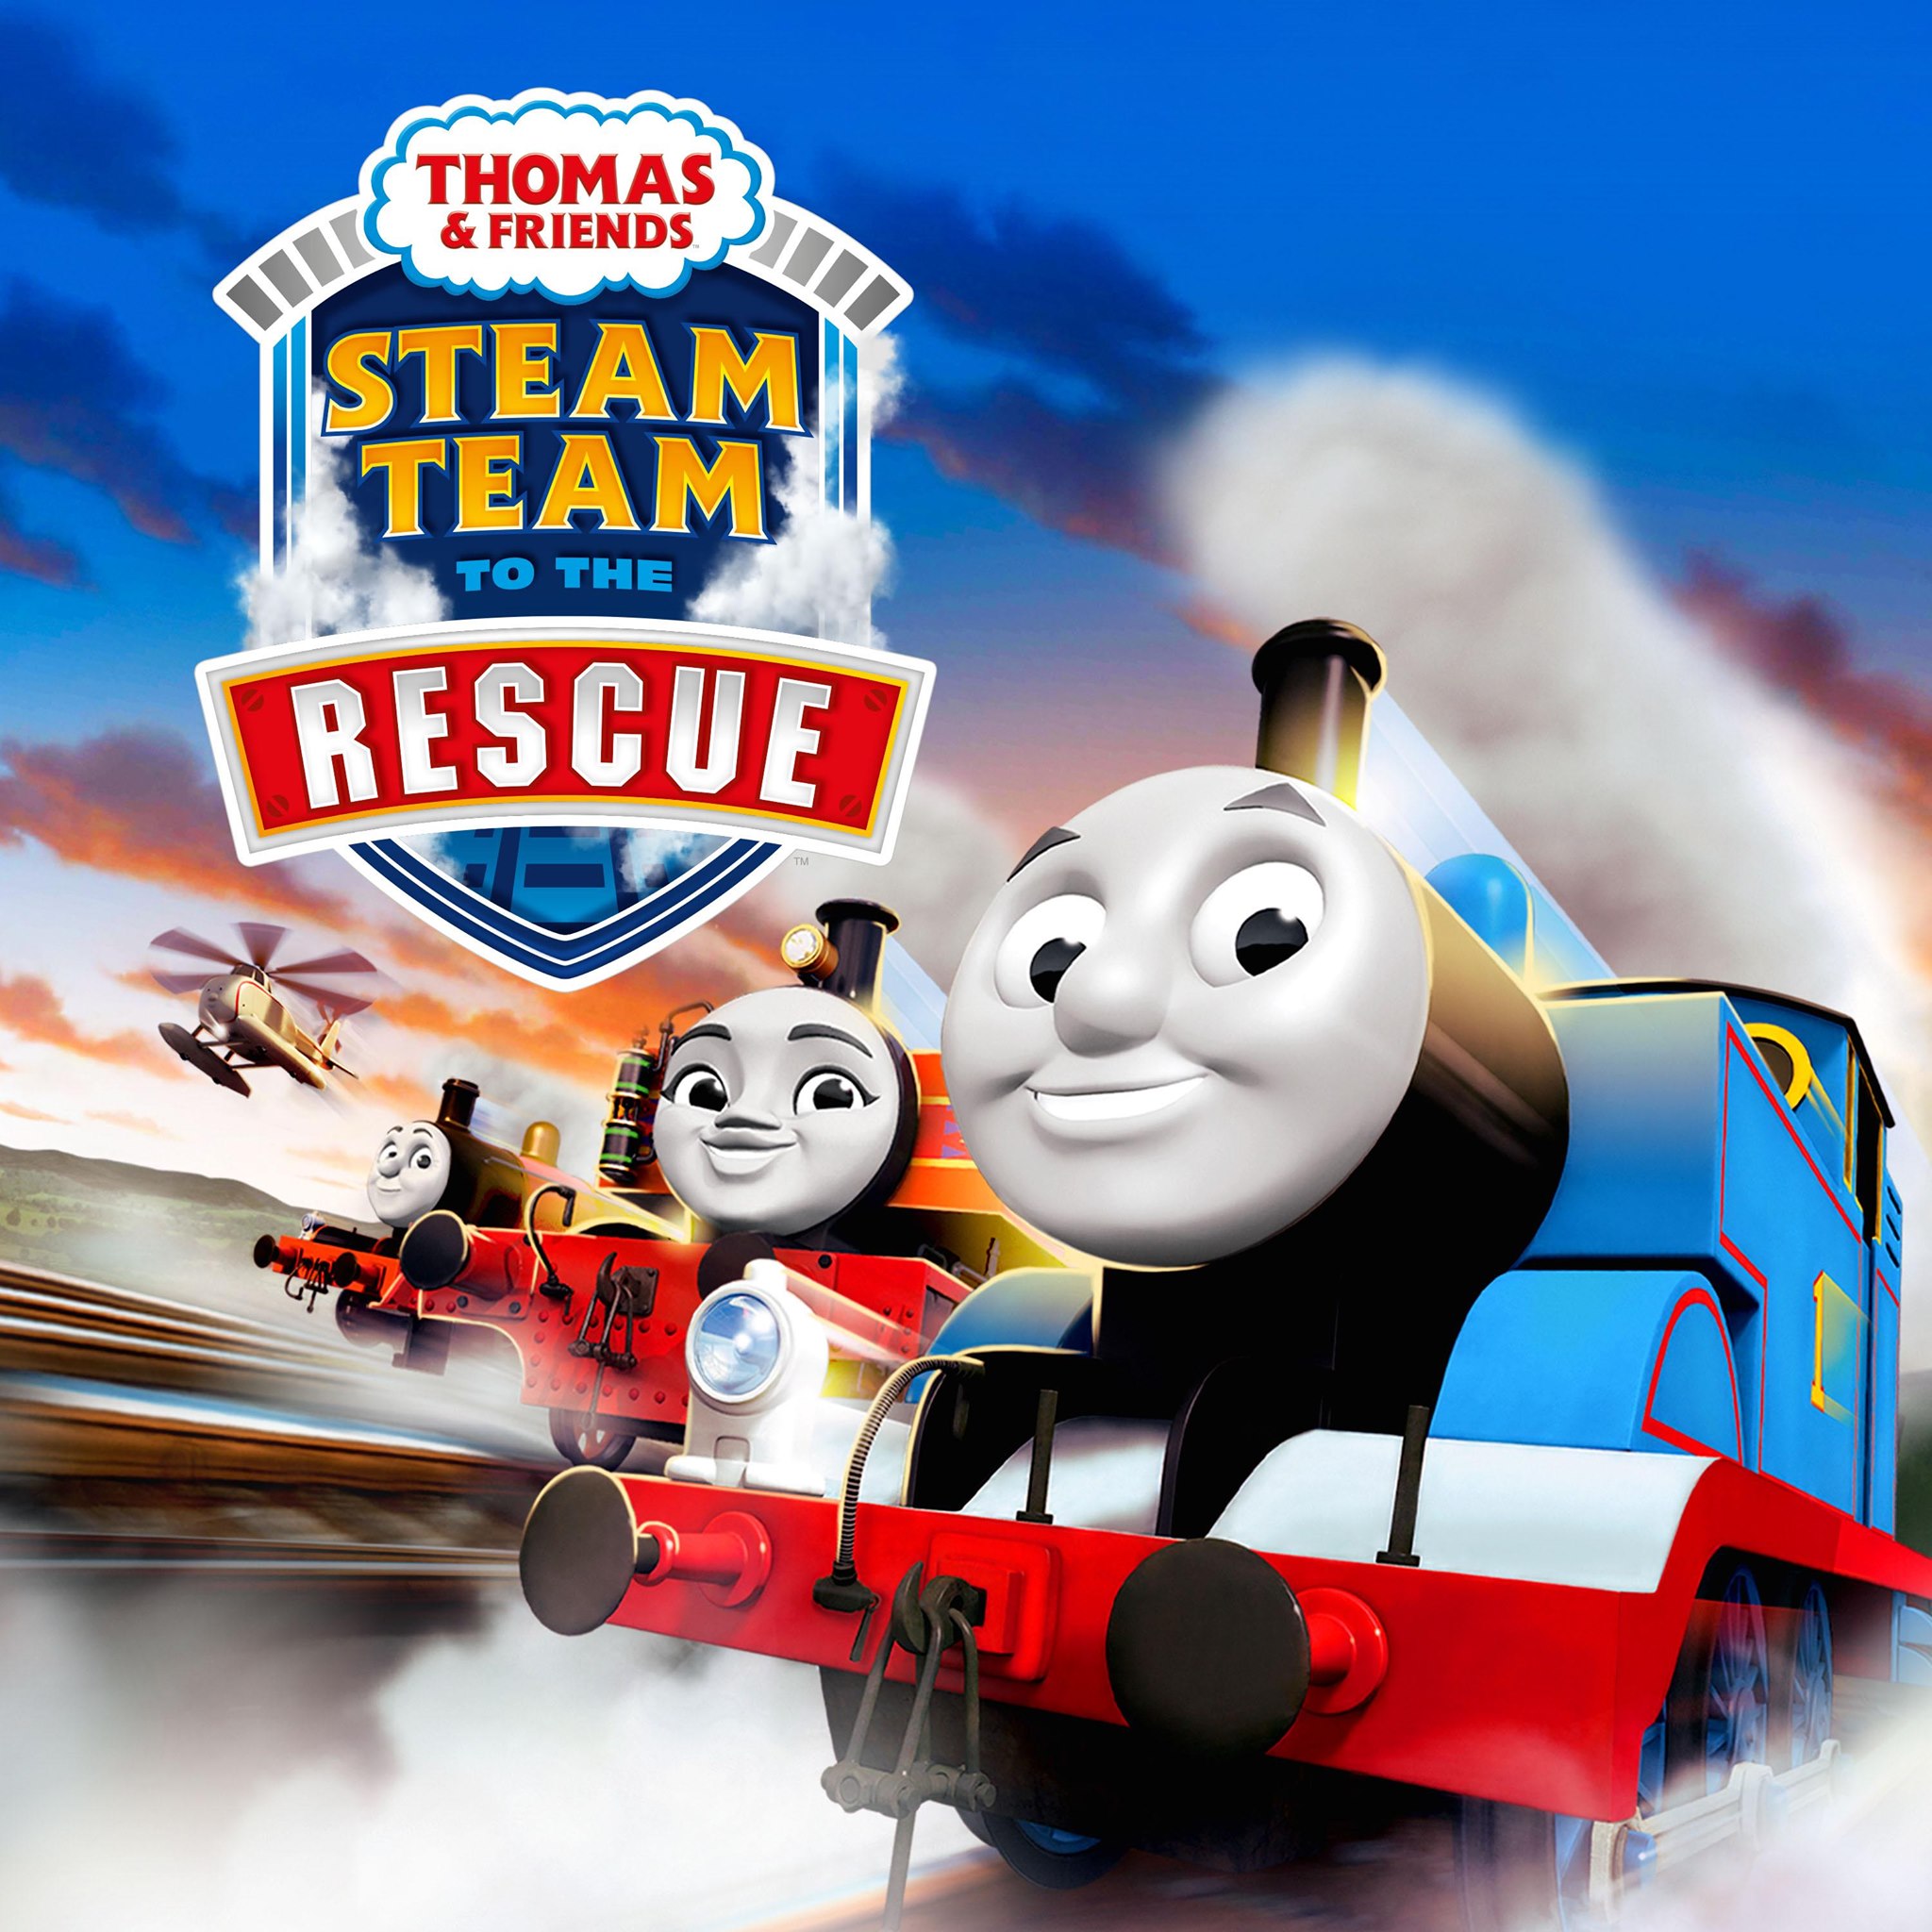 Команда паровозов. Thomas and friends Steam Team. Thomas and friends Steam Team vs Diesel Team.